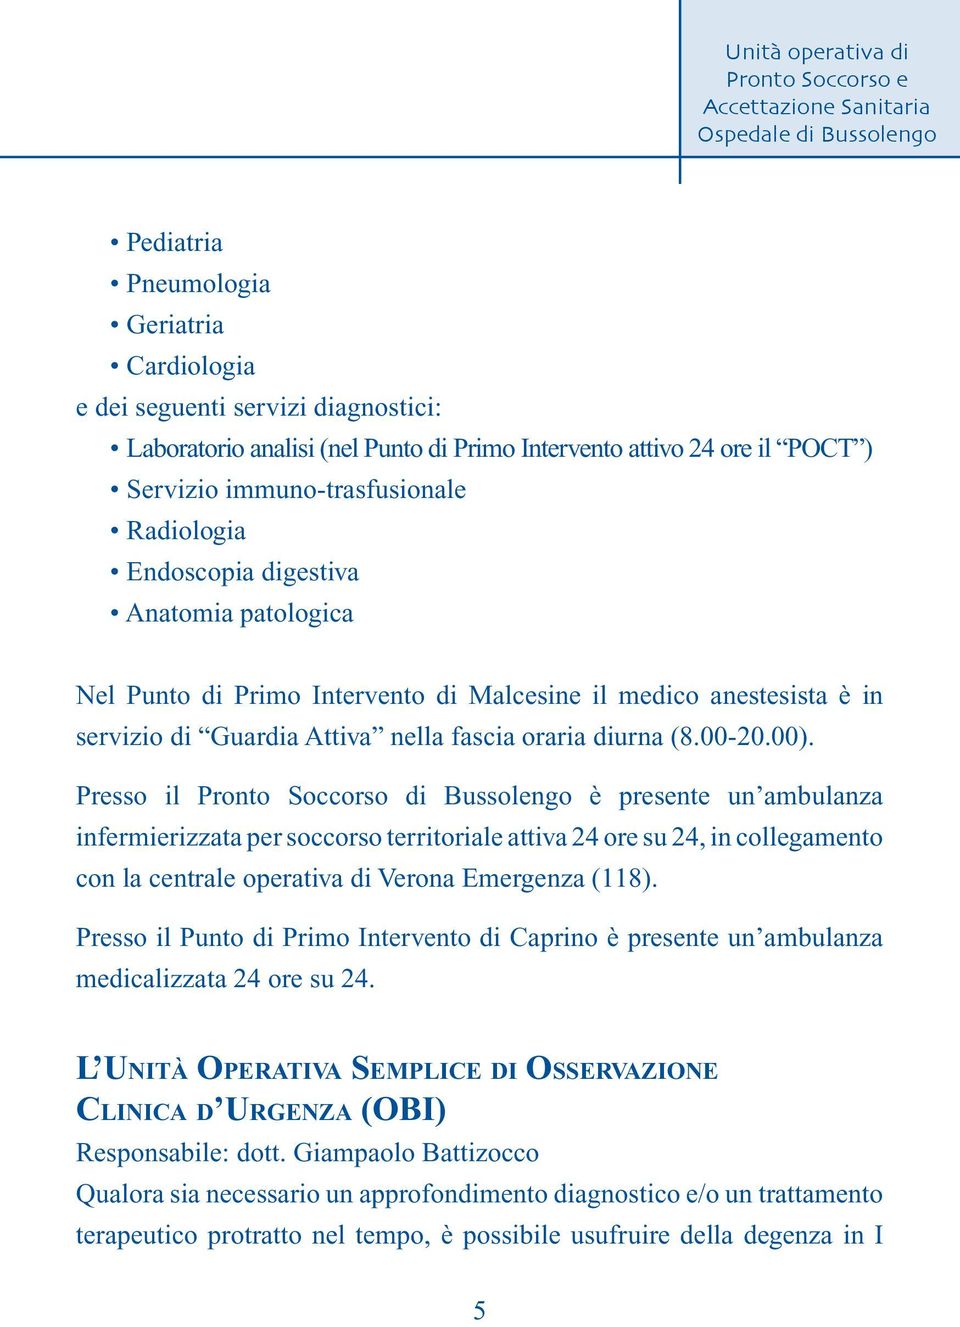 Presso il Pronto Soccorso di Bussolengo è presente un ambulanza infermierizzata per soccorso territoriale attiva 24 ore su 24, in collegamento con la centrale operativa di Verona Emergenza (118).